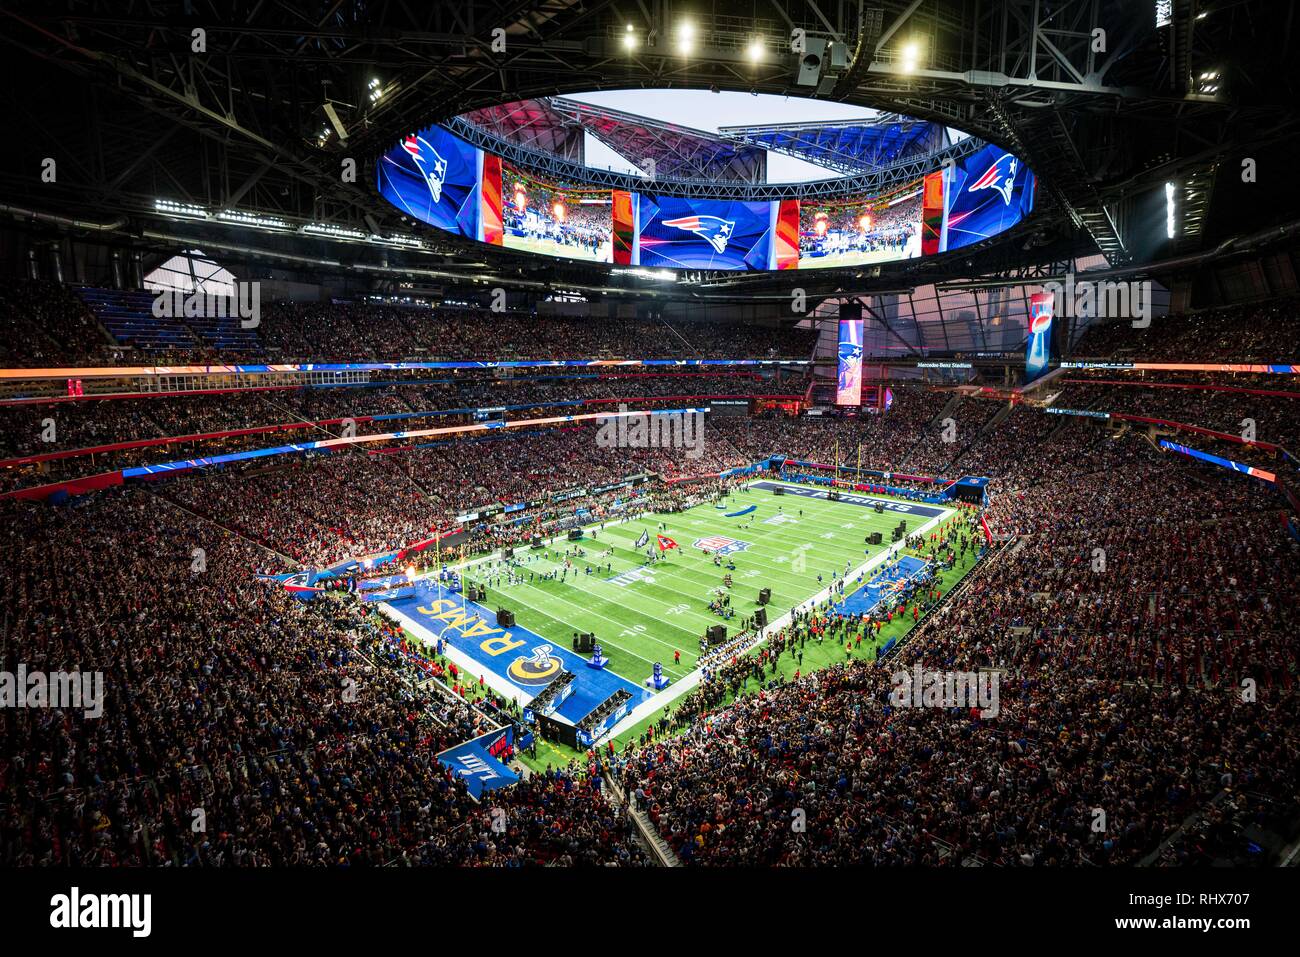 Il New England Patriots prende il campo durante il Super Bowl LIII tra il Los Angeles Rams e il New England Patriots domenica 3 febbraio 2019 al Mercedes-Benz Stadium di Atlanta, GA. Giacobbe Kupferman/CSM Foto Stock